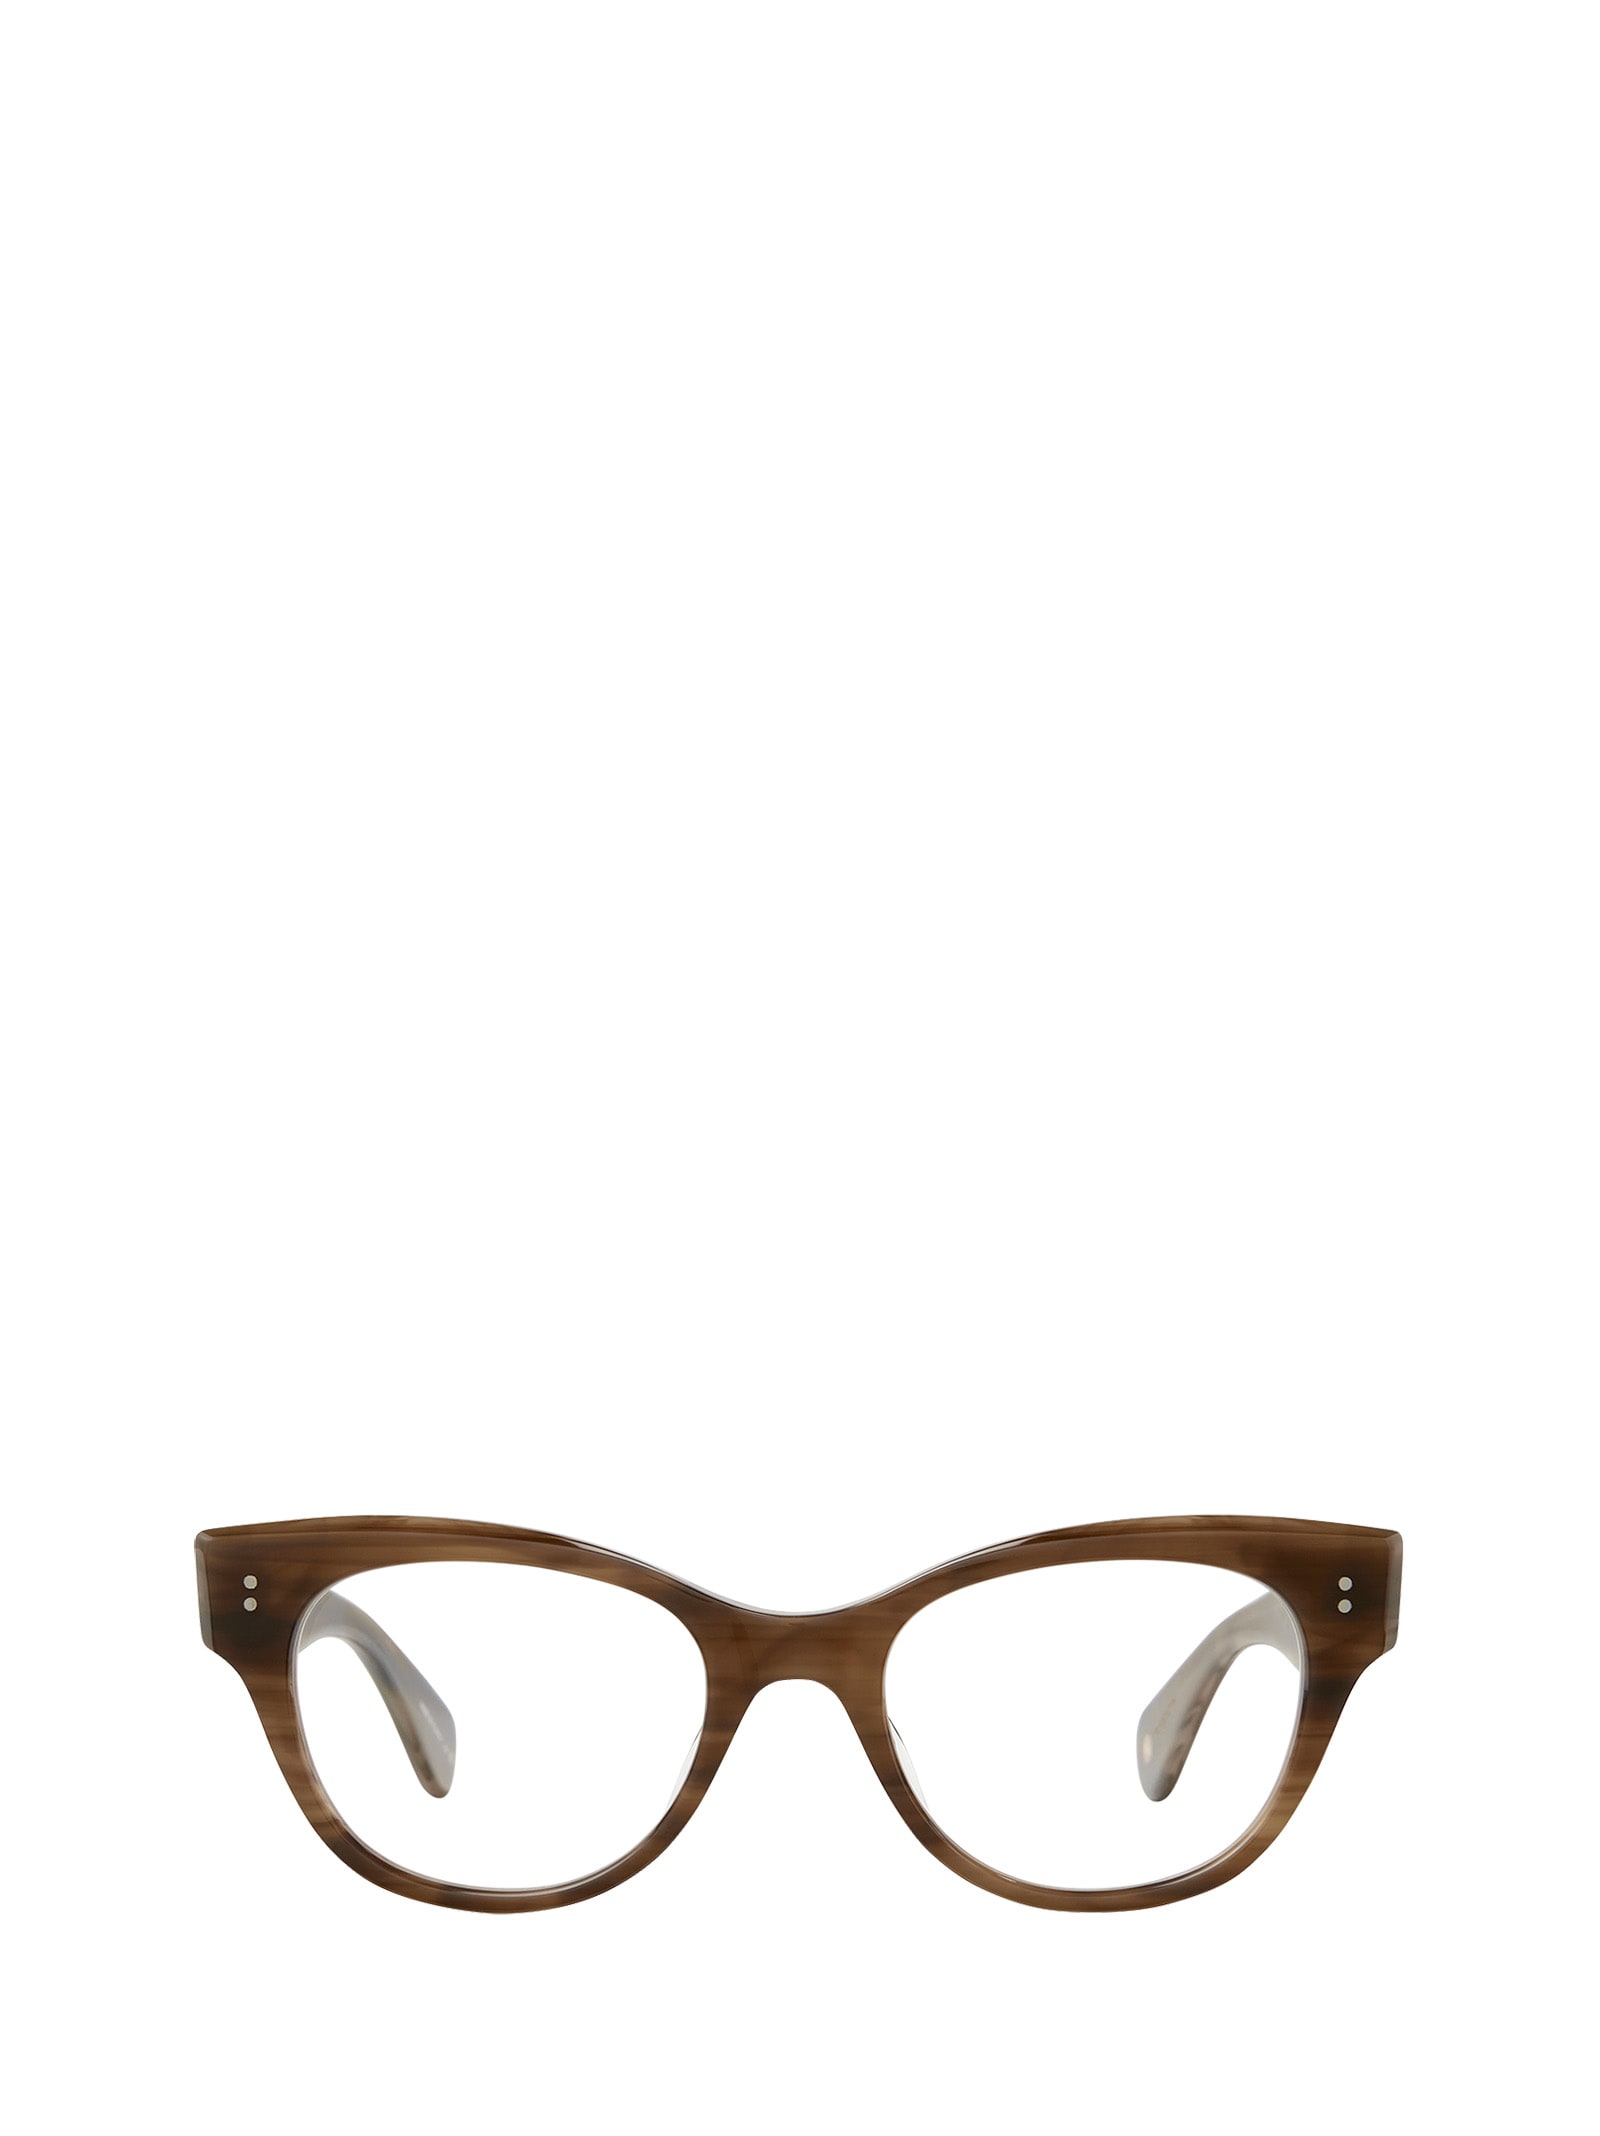 Garrett Leight Octavia Malibu Tortoise Glasses